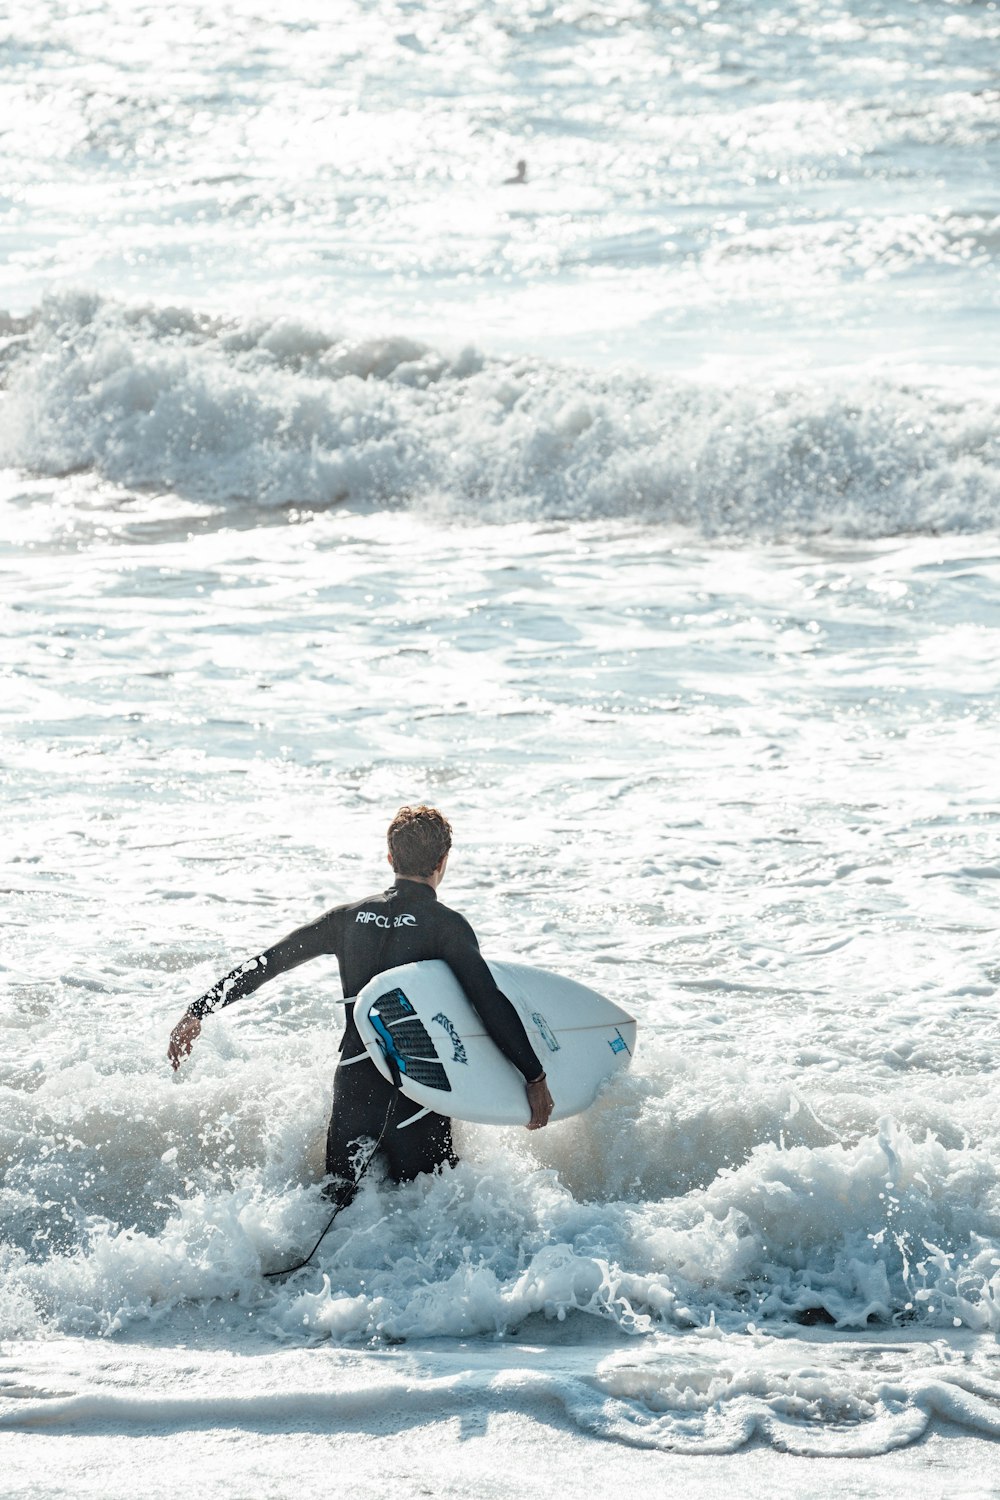 검은 잠수복을 입은 남자가 낮에 바다 파도에 서핑을 하고 있다